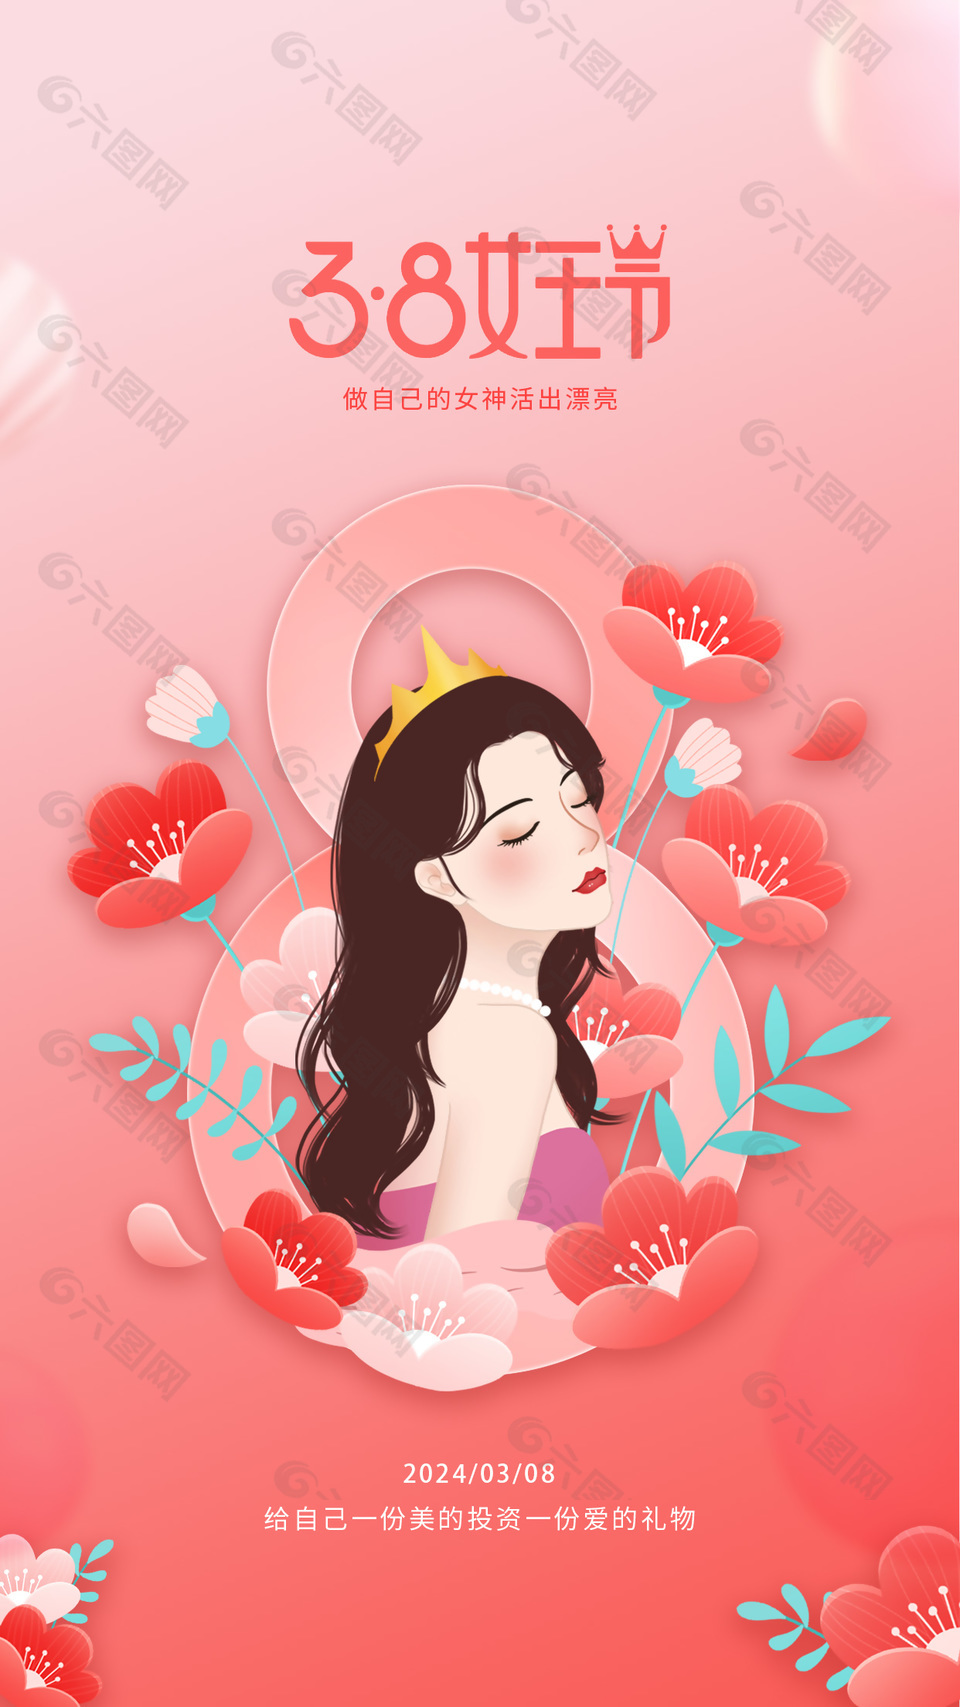 3.8女王节简约插画粉色海报